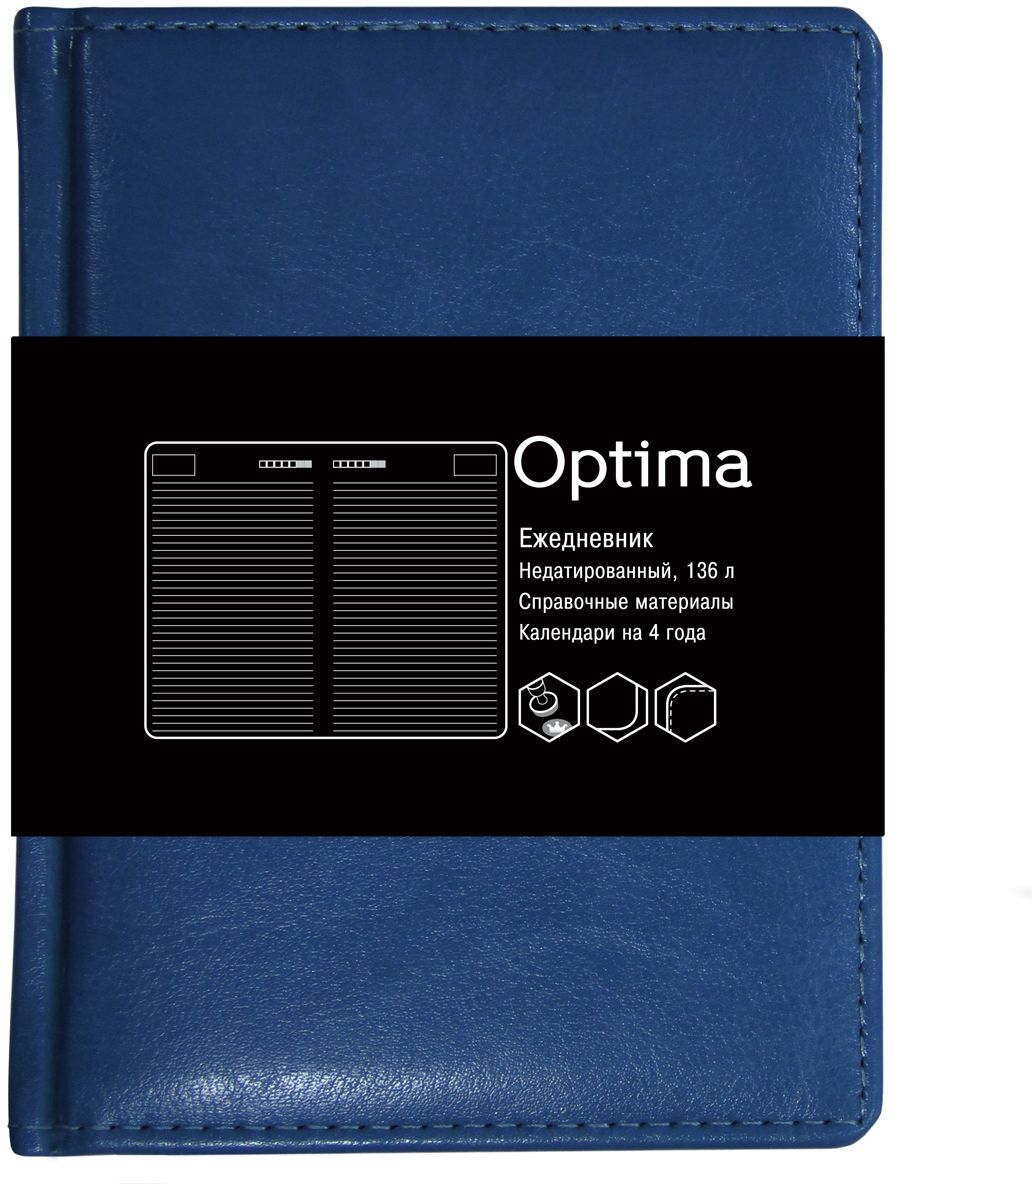 Канц-Эксмо Ежедневник Optima недатированный 136 листов цвет синий формат A6